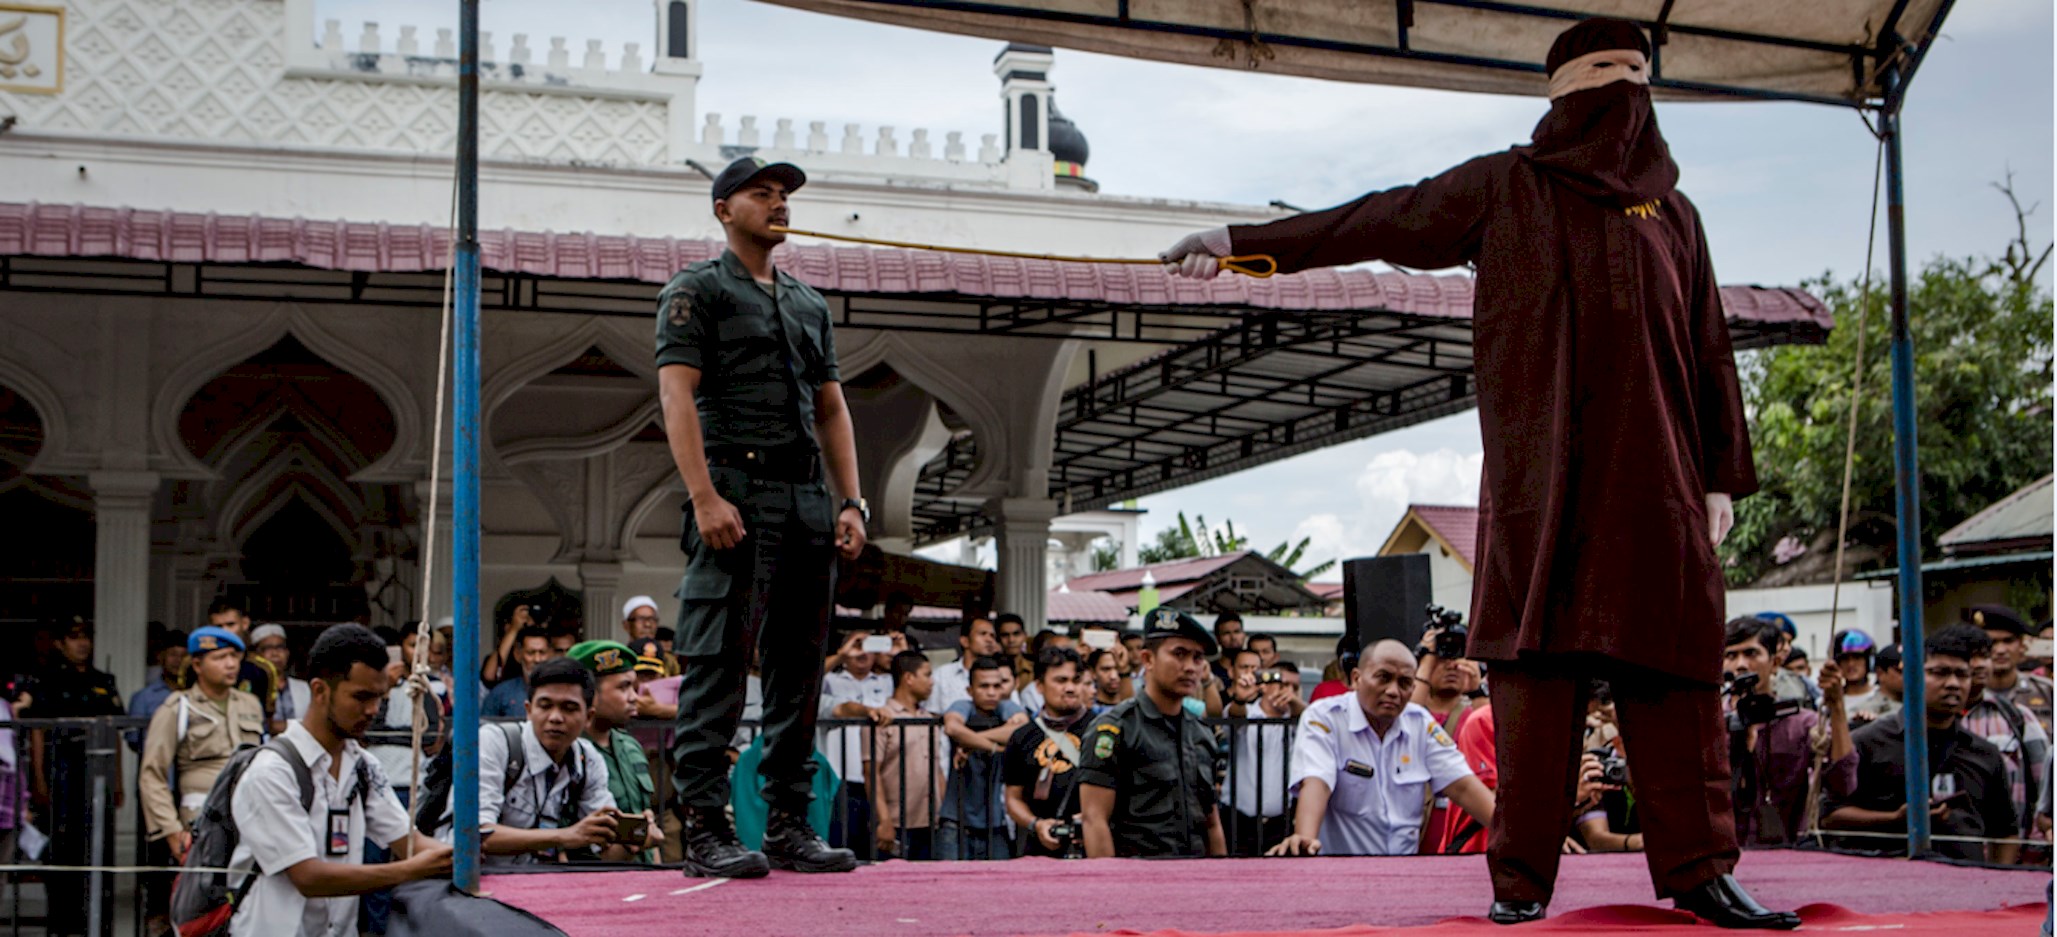 Indonesia Azotes con vara a hombres gays, un atroz acto de crueldad imagen